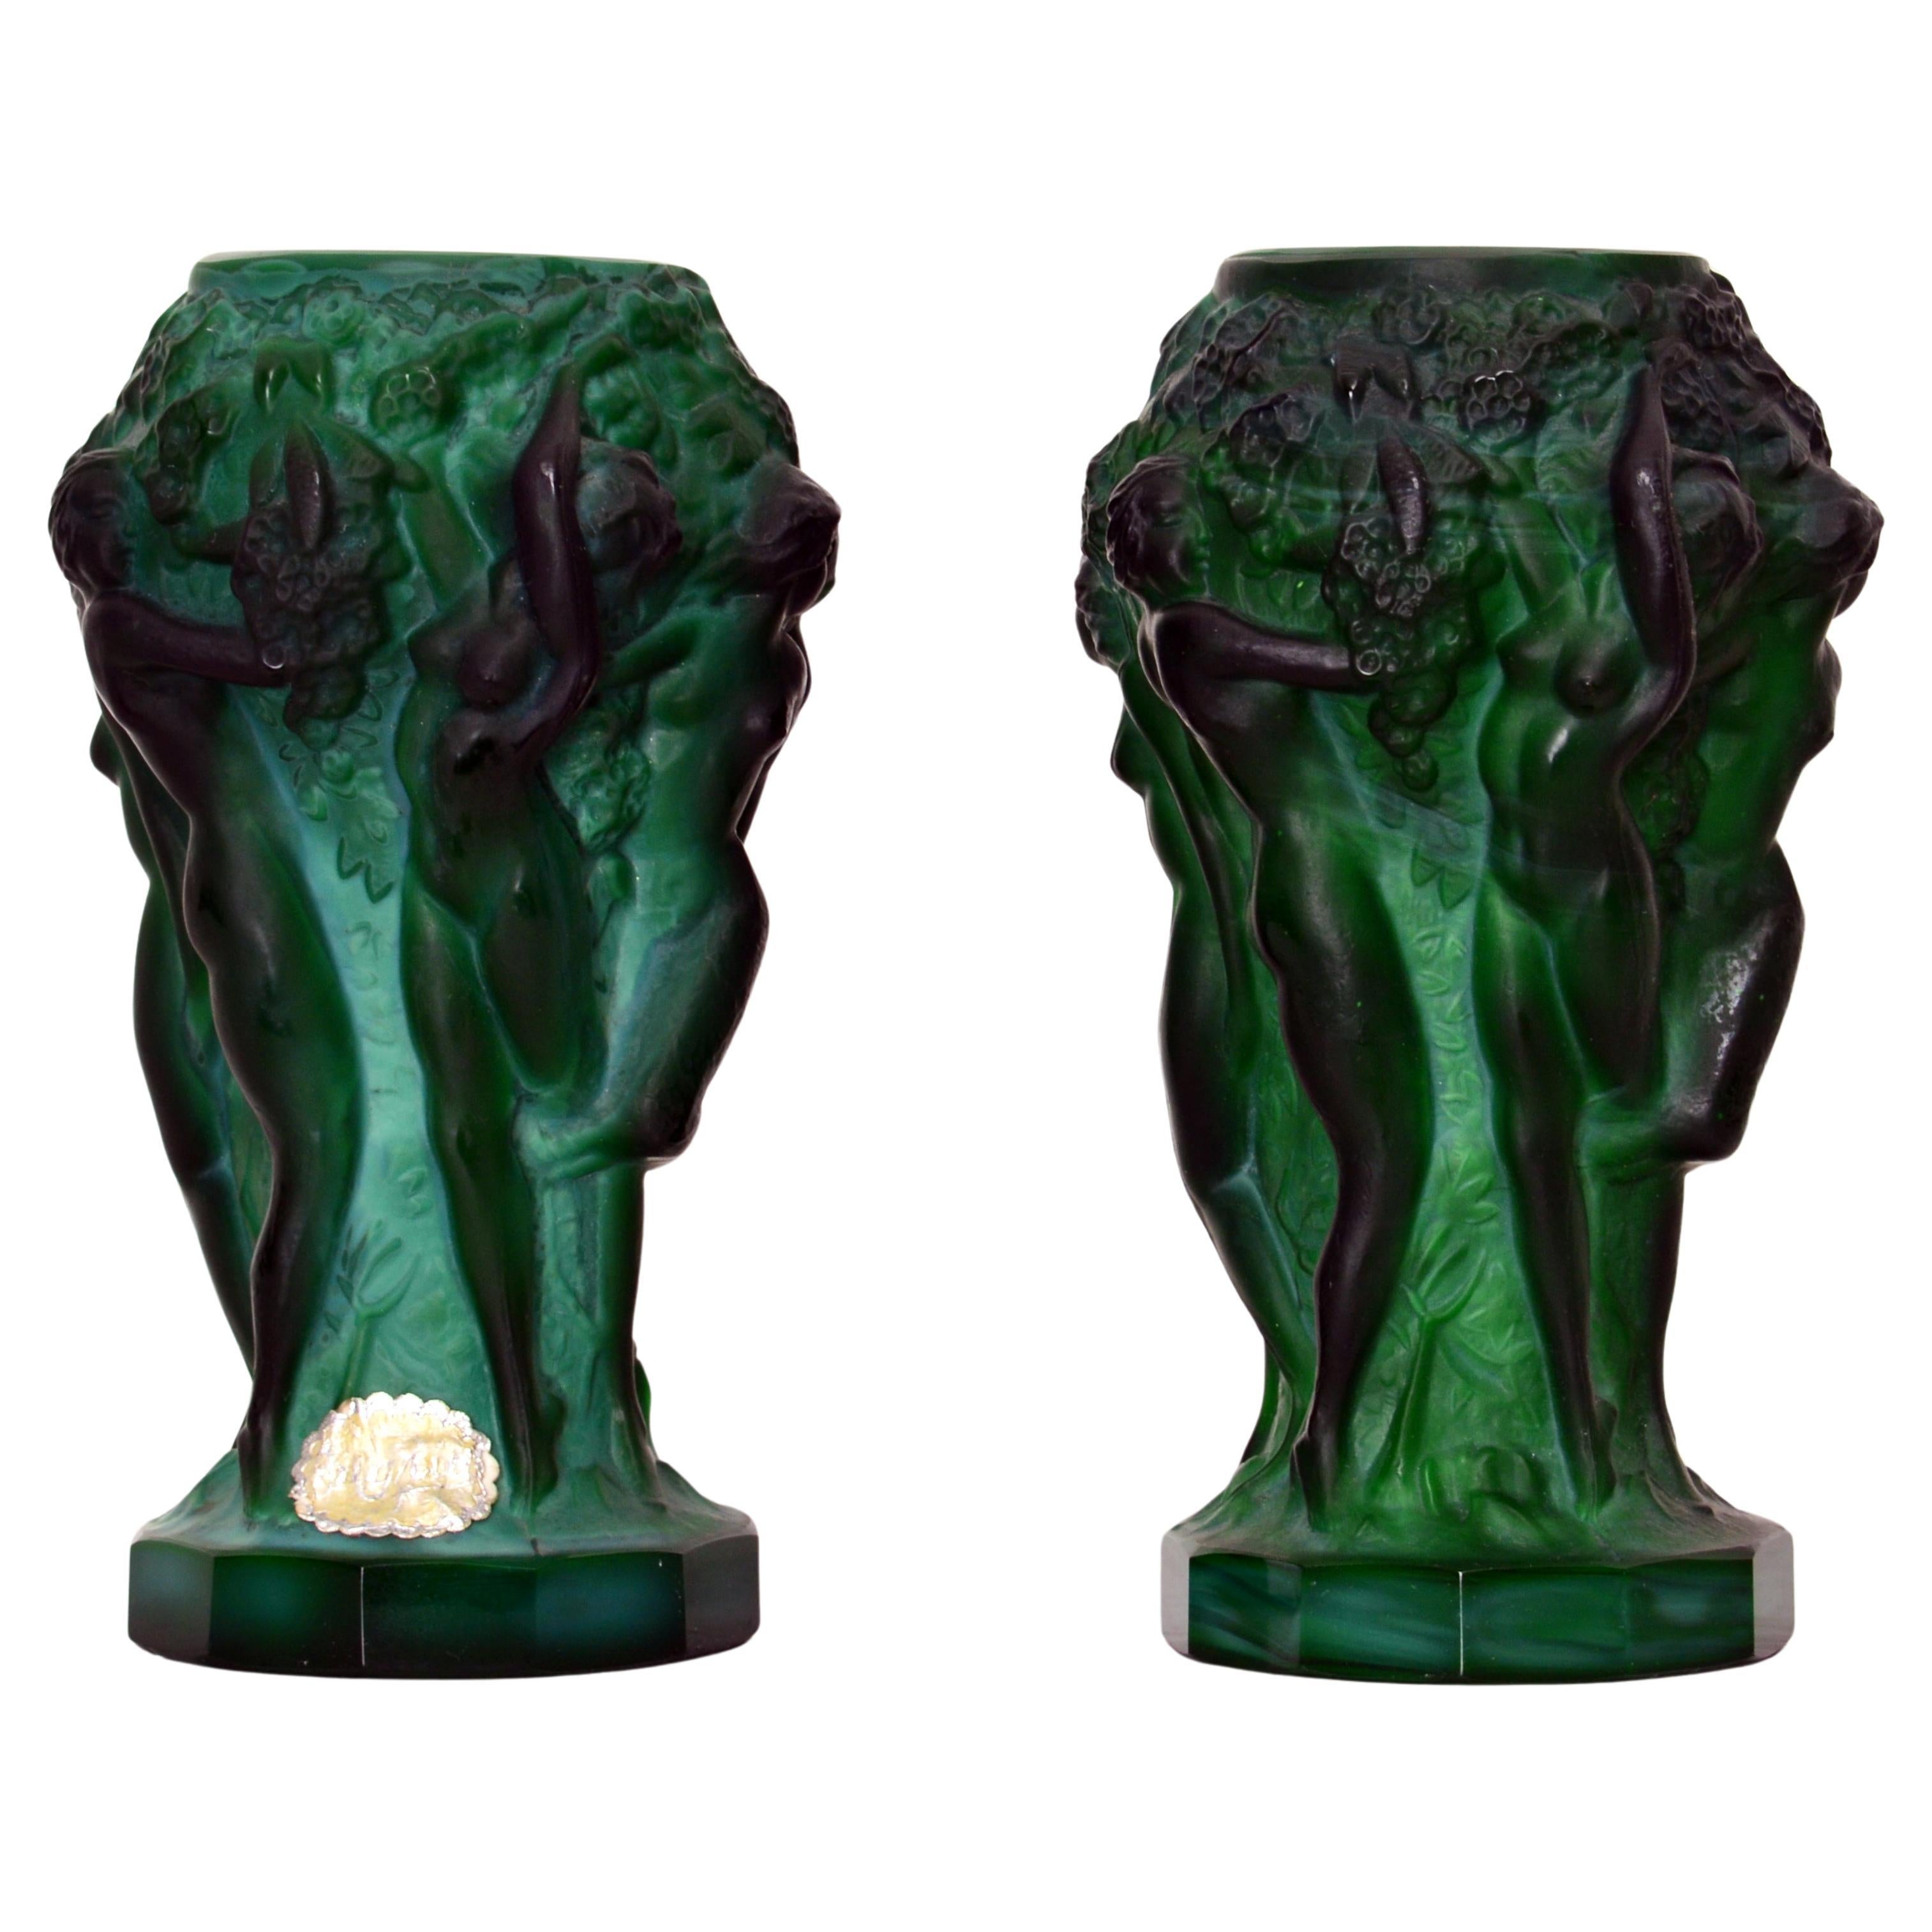 Paire de vases très élégants en verre malachite vert Art déco de Bohème avec des vierges nues cueillant des raisins par Curt Schlevogt et datant d'environ 1930. Les vases sont fortement moulés avec des bases plates à douze côtés avec six vierges